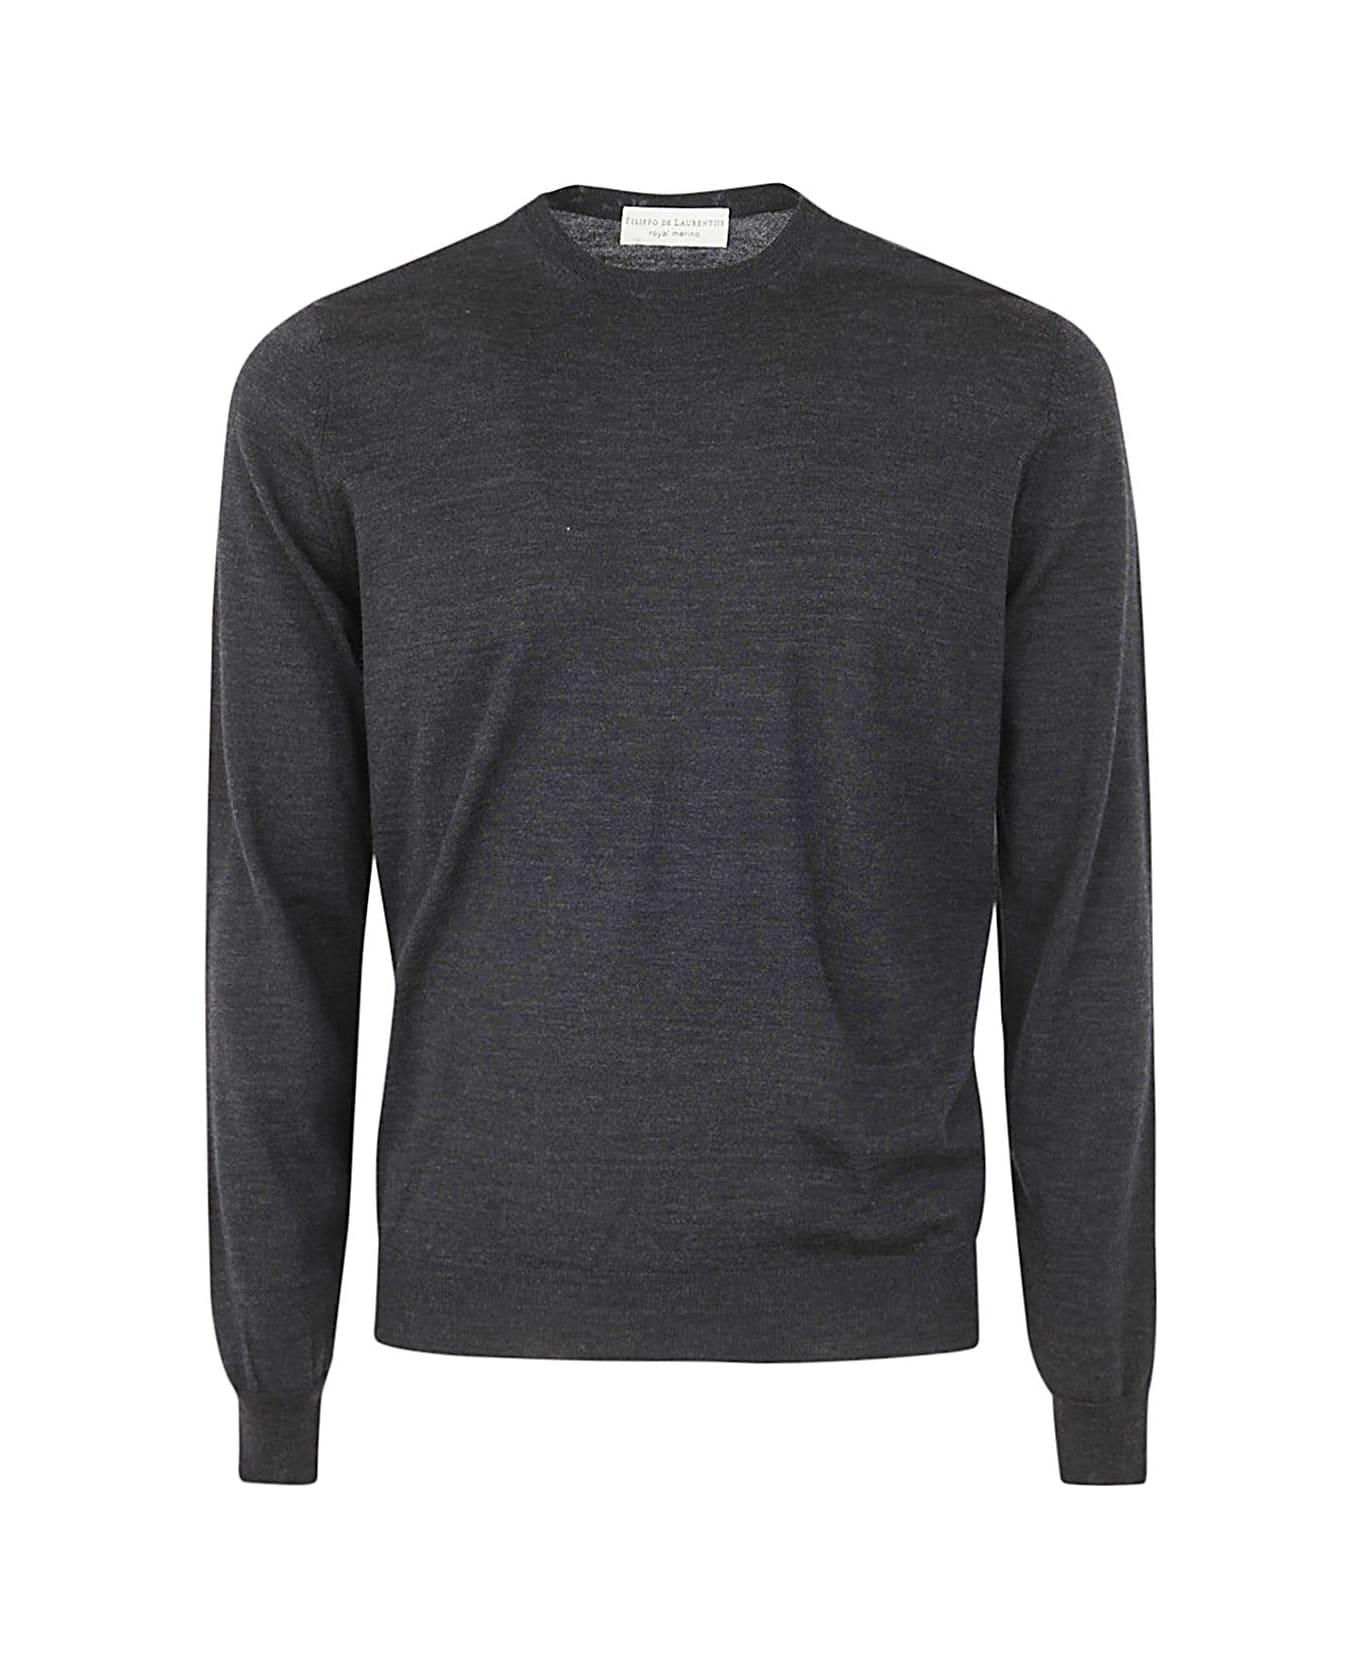 Filippo De Laurentiis Royal Merino Long Sleeves Crew Neck Sweater - Anthracite ニットウェア